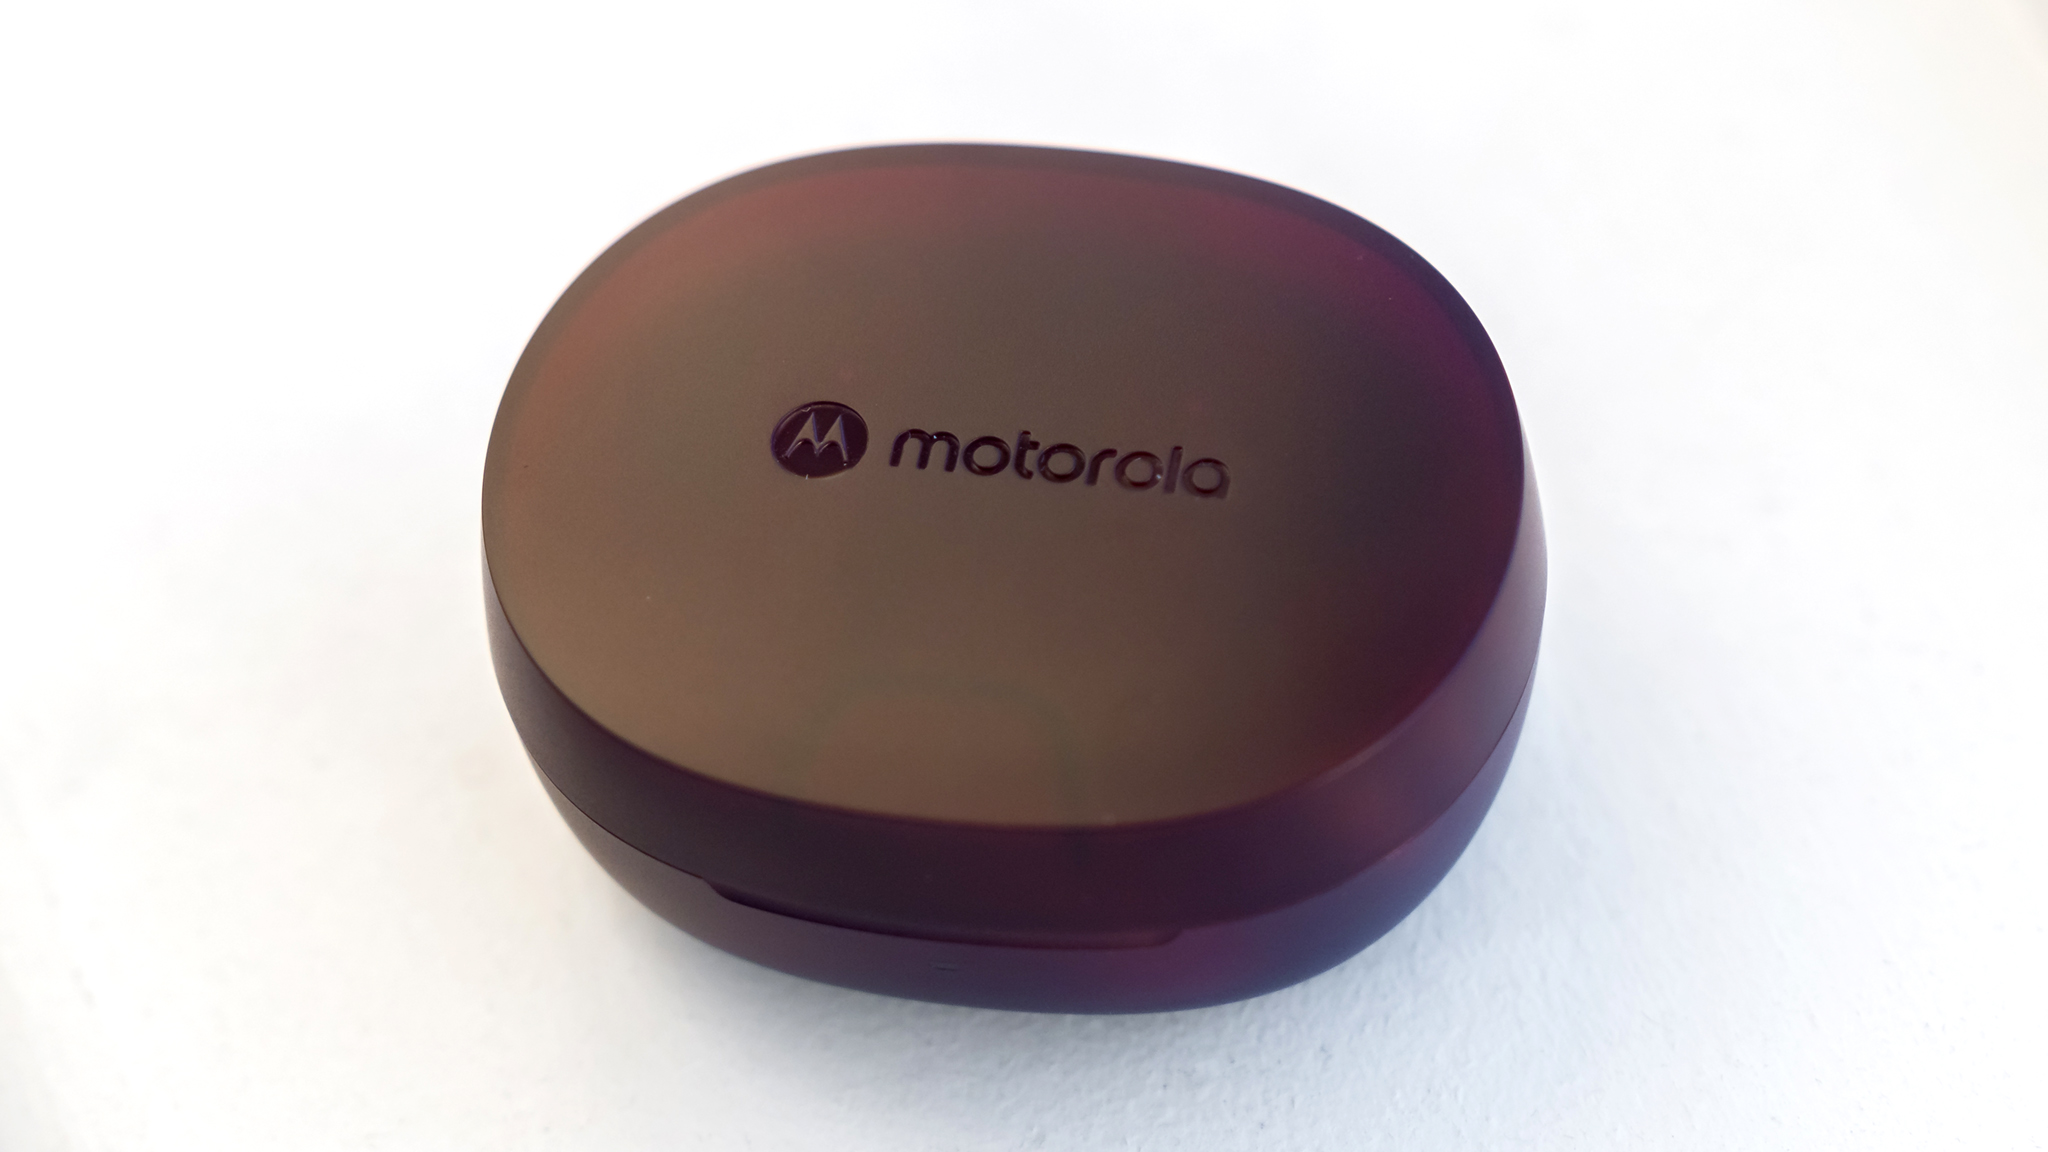 Motorola Moto Buds 600 ANC dėklas uždarytas.